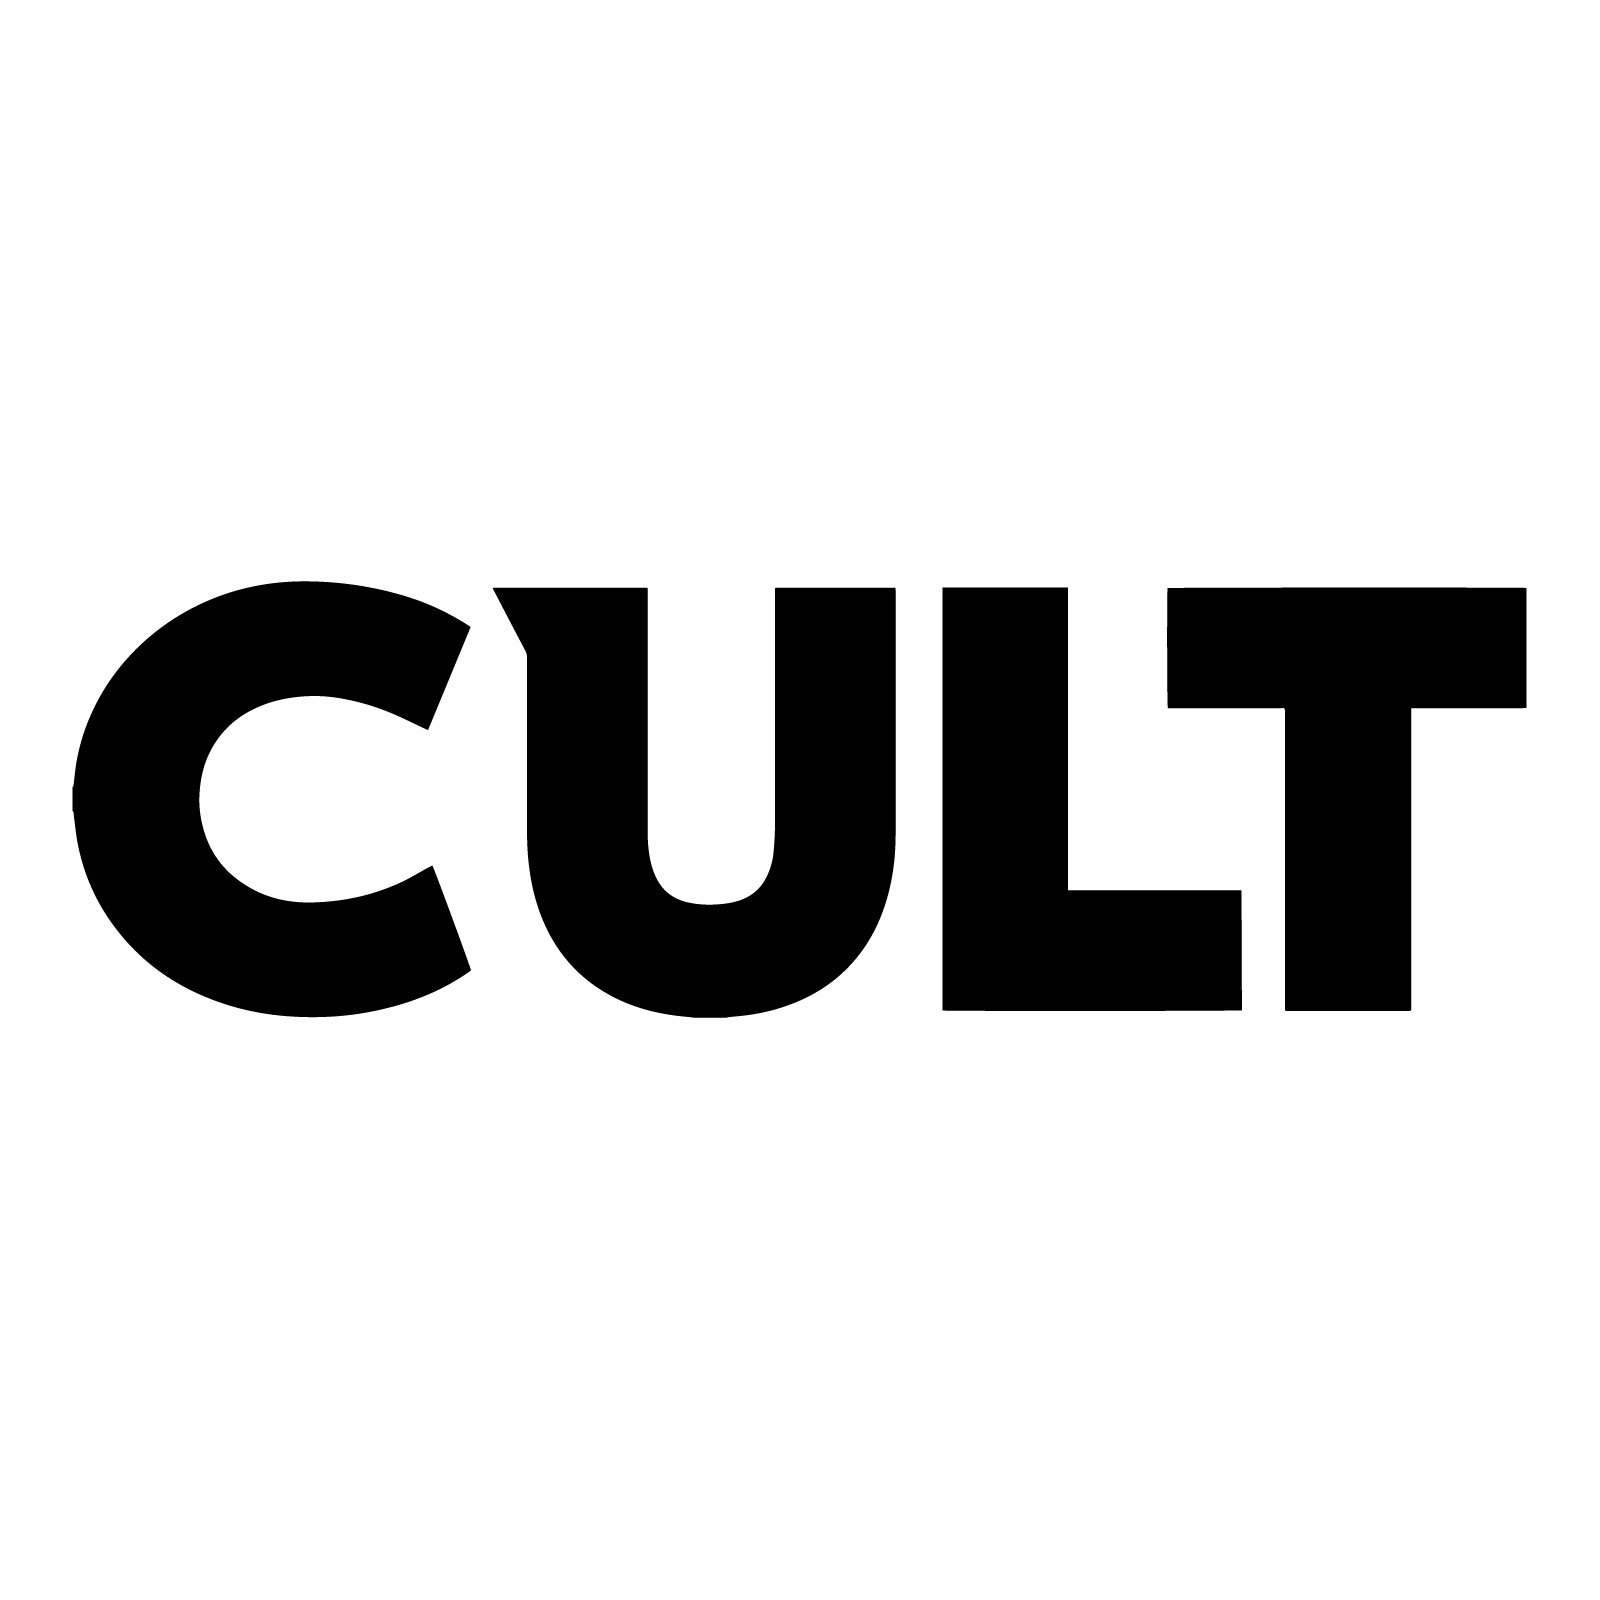 Cult Of Mac Logo transparent PNG - StickPNG